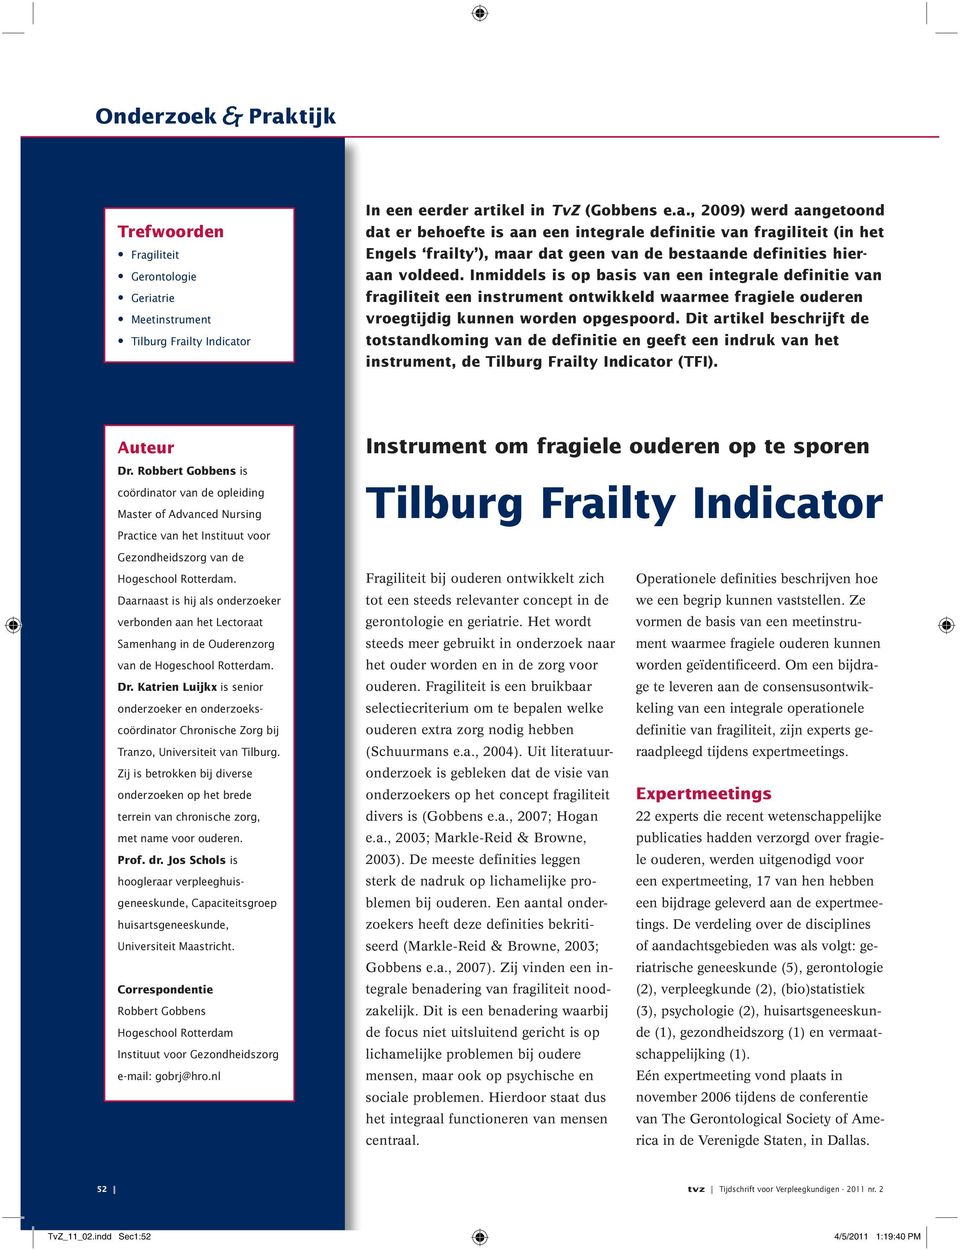 Dit artikel beschrijft de totstandkoming van de definitie en geeft een indruk van het instrument, de Tilburg Frailty Indicator (TFI). Auteur Dr.